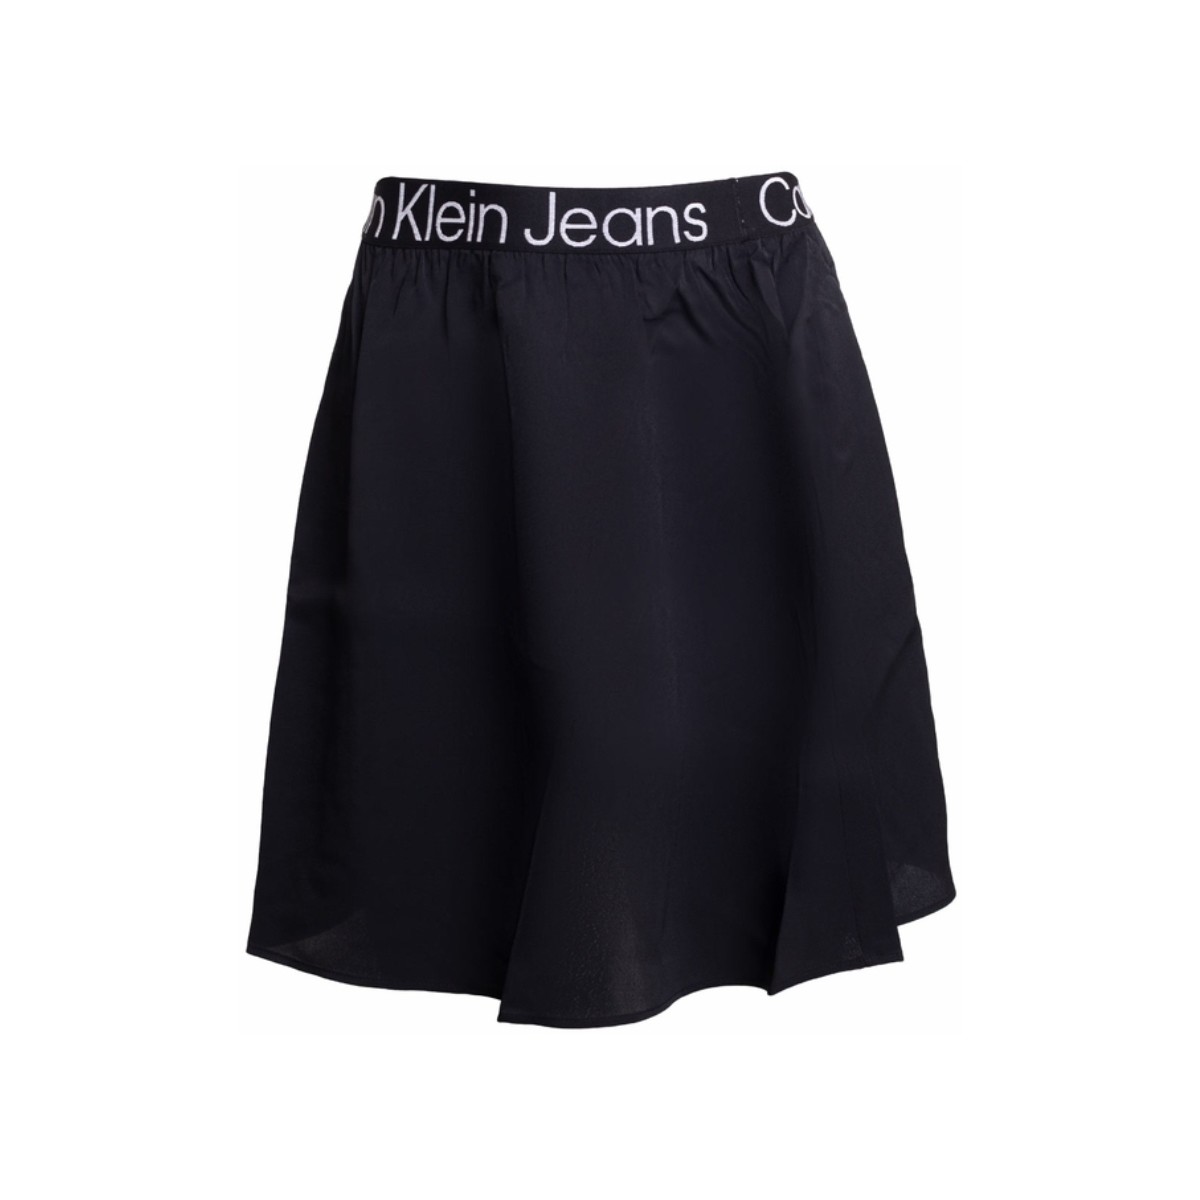 Vêtements Femme Jupes Calvin Klein Jeans Jupe Courte  Ref 59087 BEH Noir Noir